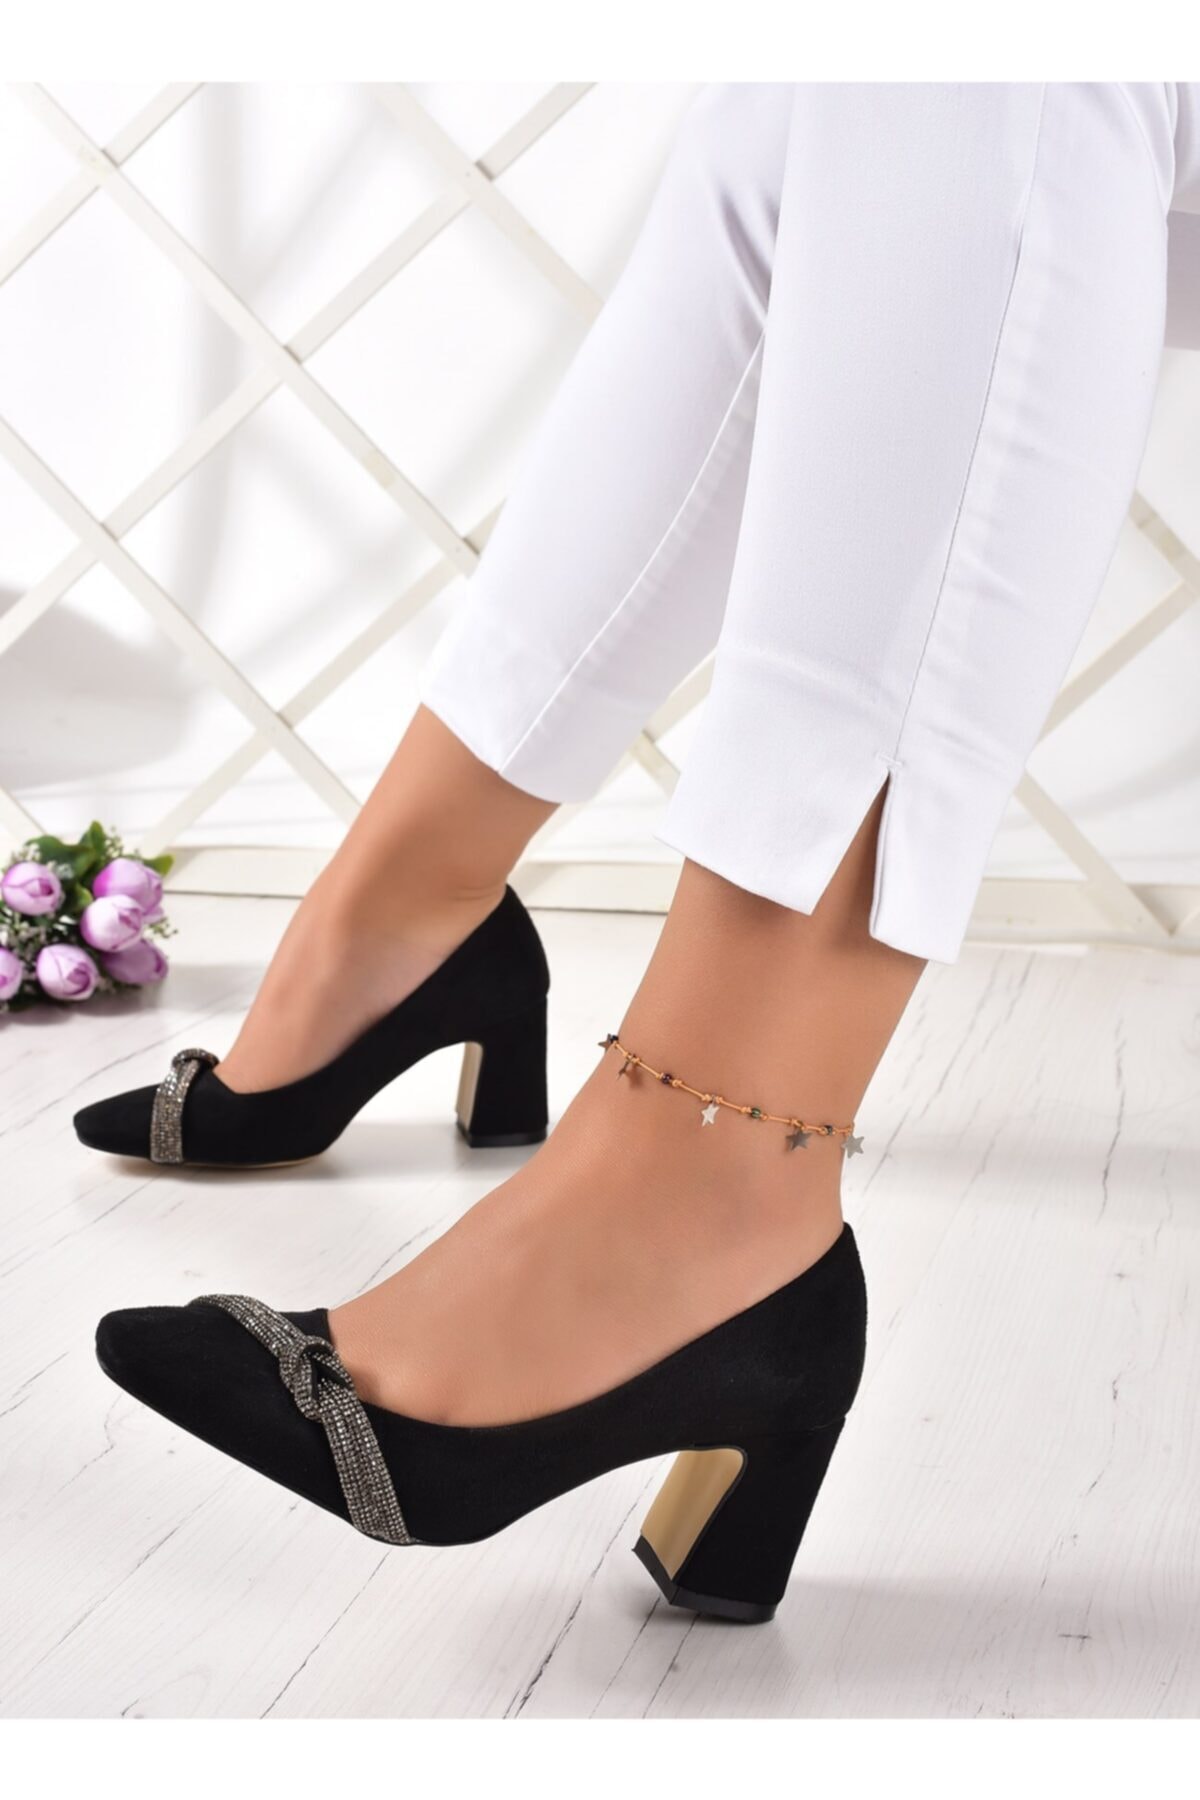 Erkan Saçmacı Siyah Süet Küt Burunlu Klasik Kadın Ayakkabı 7 Cm Topuk Boyu